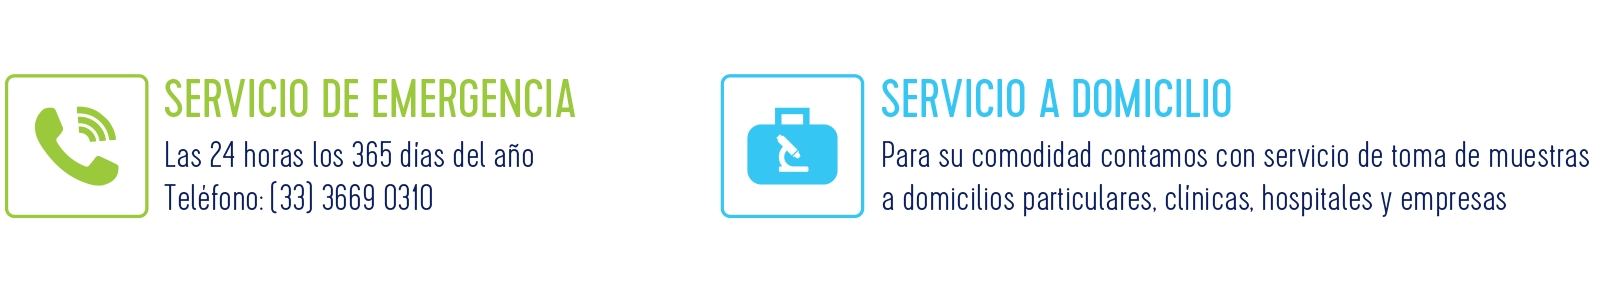 Servicio de Emergencia | Servicio a Domicilio